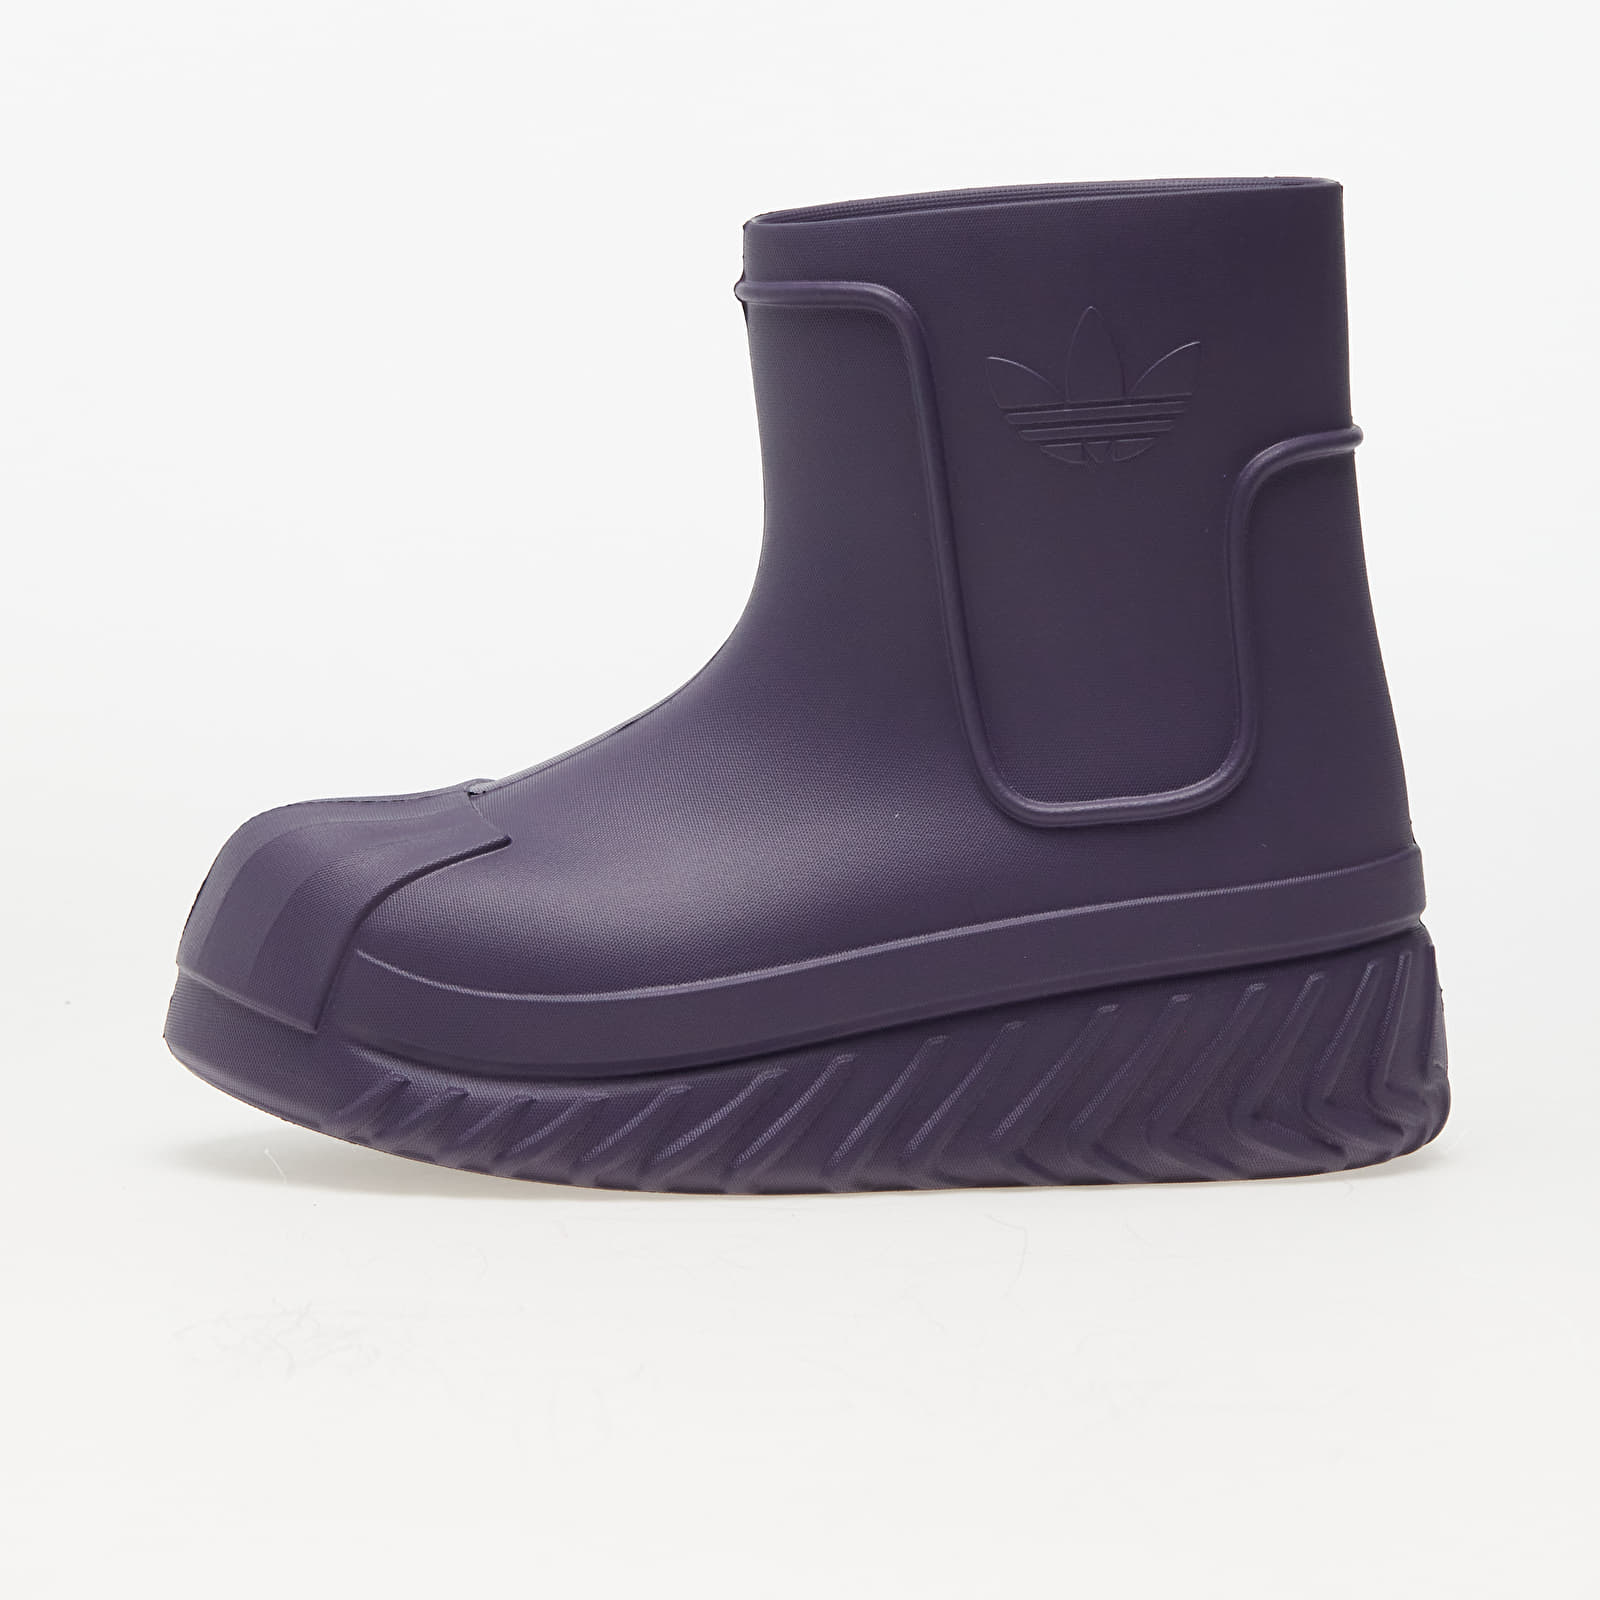 Chaussures et baskets femme adidas Adifom Superstar Boot W Shale Violet/ Core Black/ Shale Violet